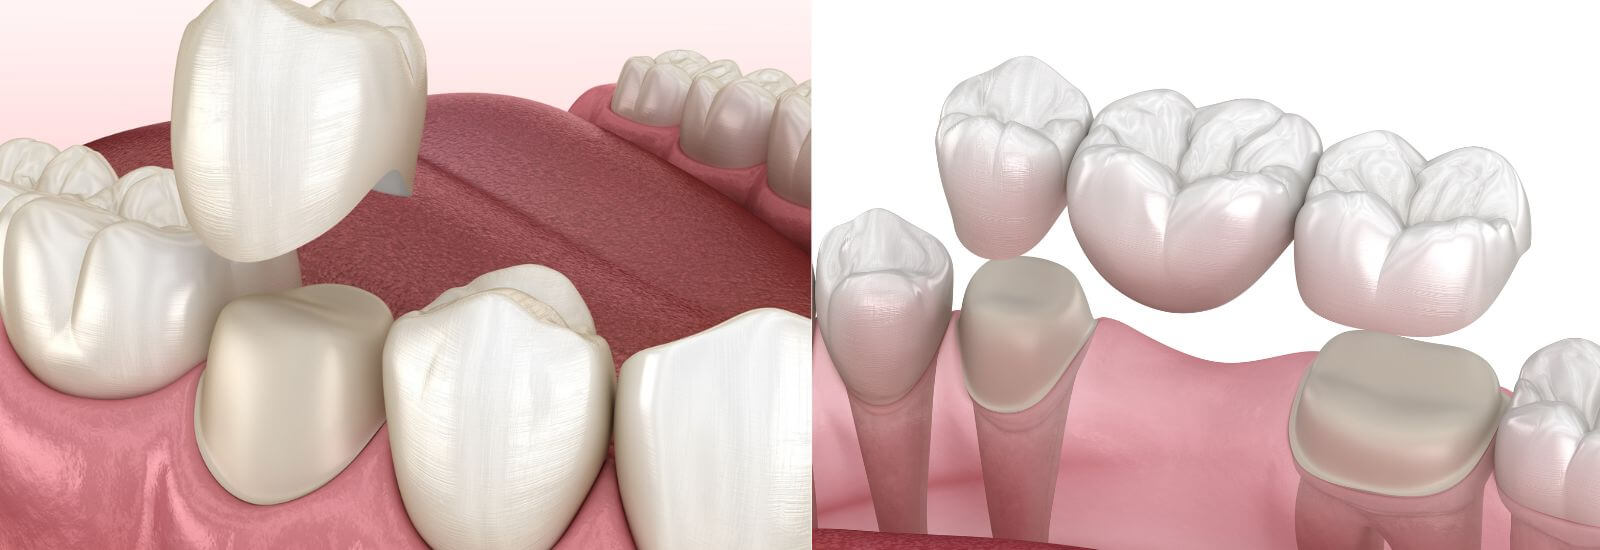 Dental crown and bridges